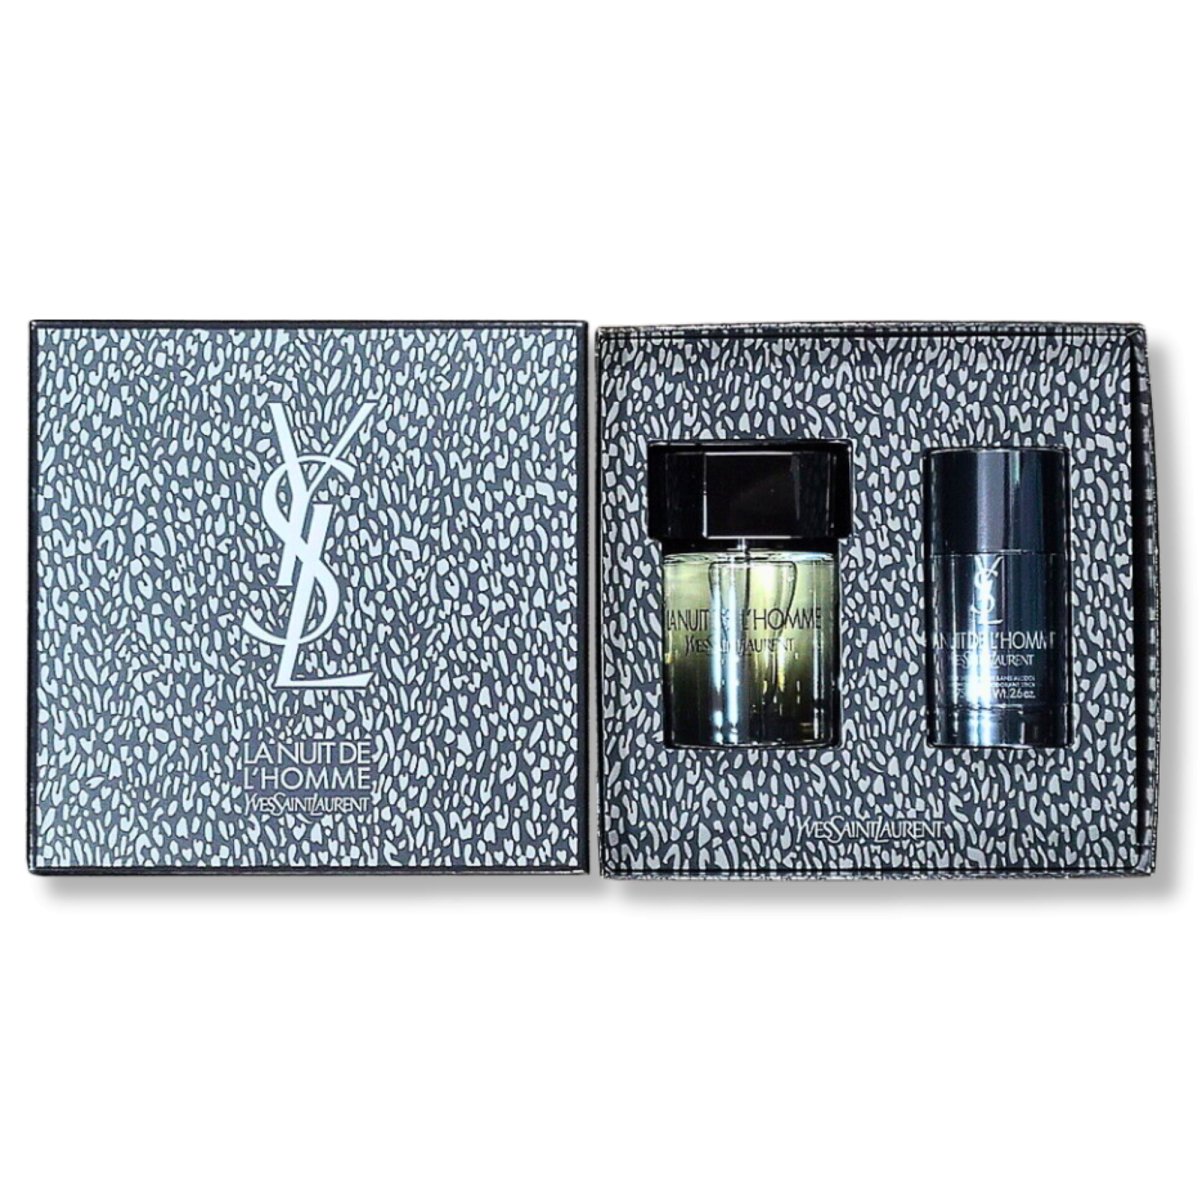 Yves Saint Laurent La Nuit De L'Homme EDT 3.4 oz + Deodorant Stick 2.6 oz - Yves Saint Laurent - Gift Set